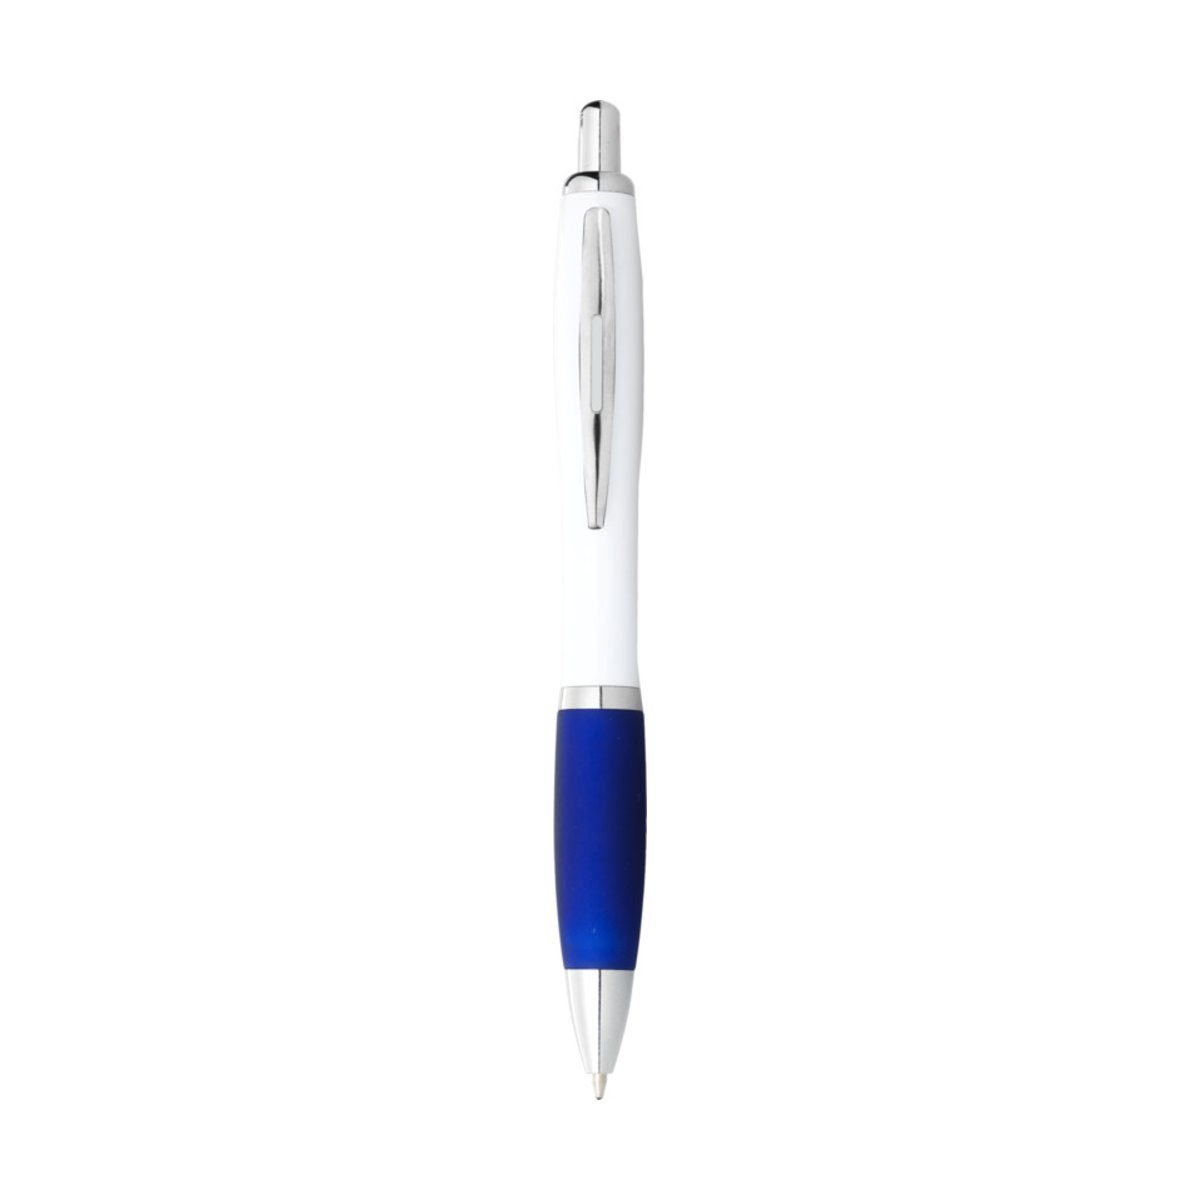 Długopis Nash z białym korpusem i kolorwym uchwytem